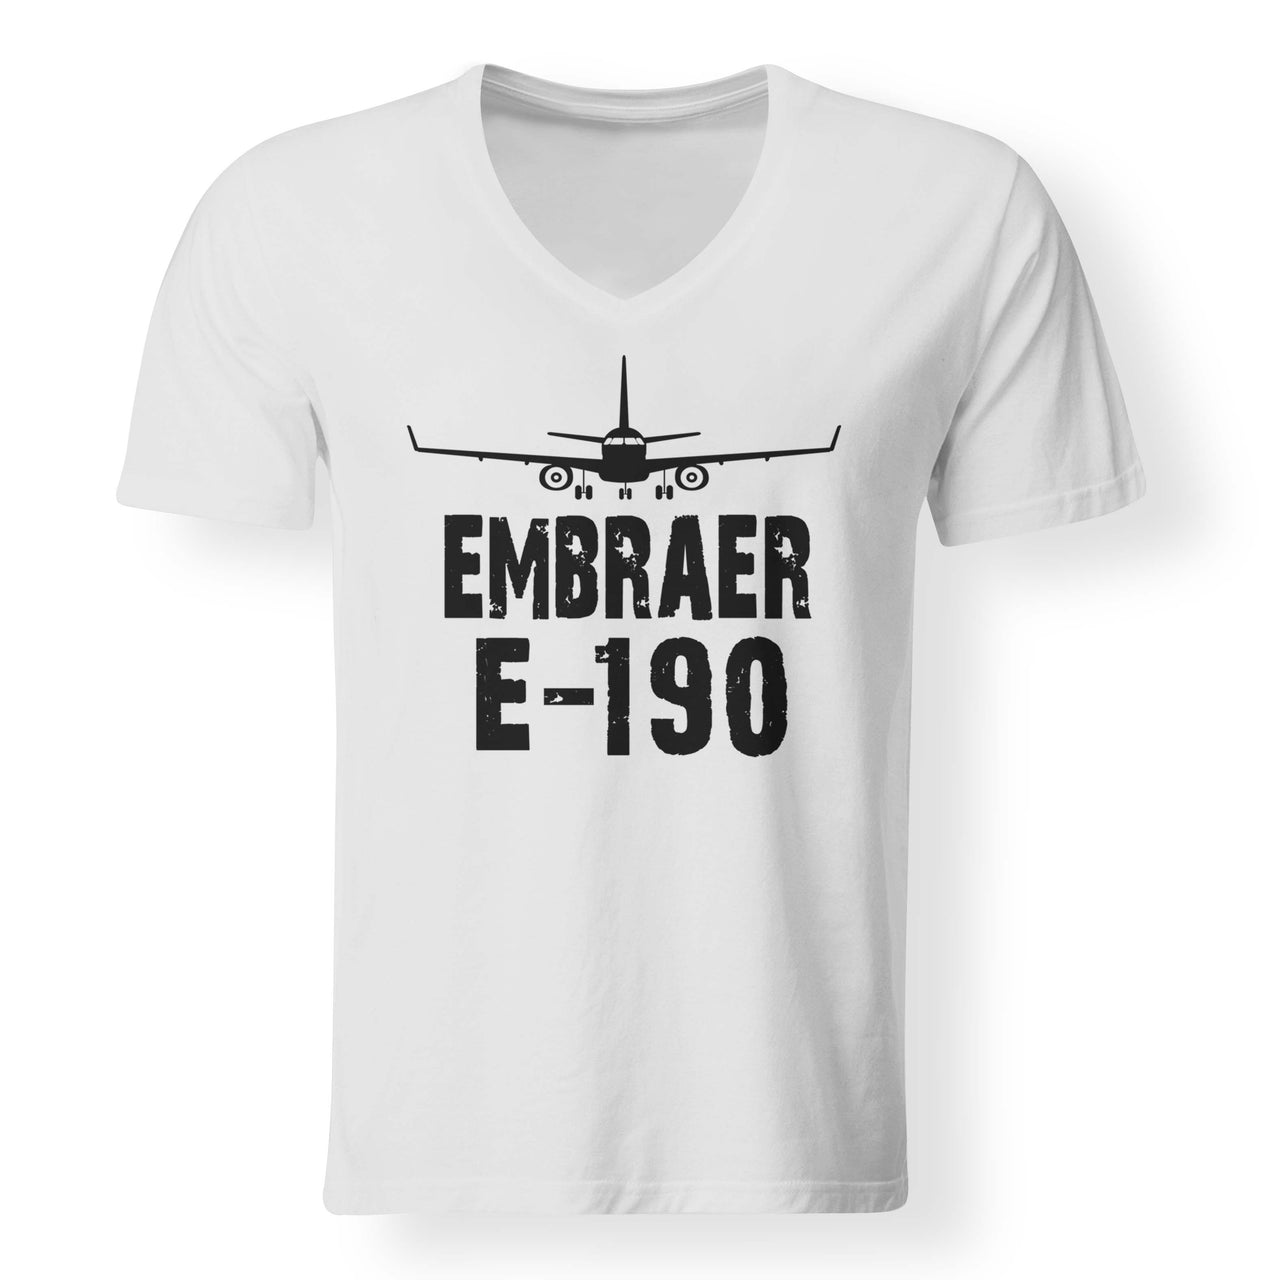 Embraer E-190 & Plane Designed V-Neck T-Shirts